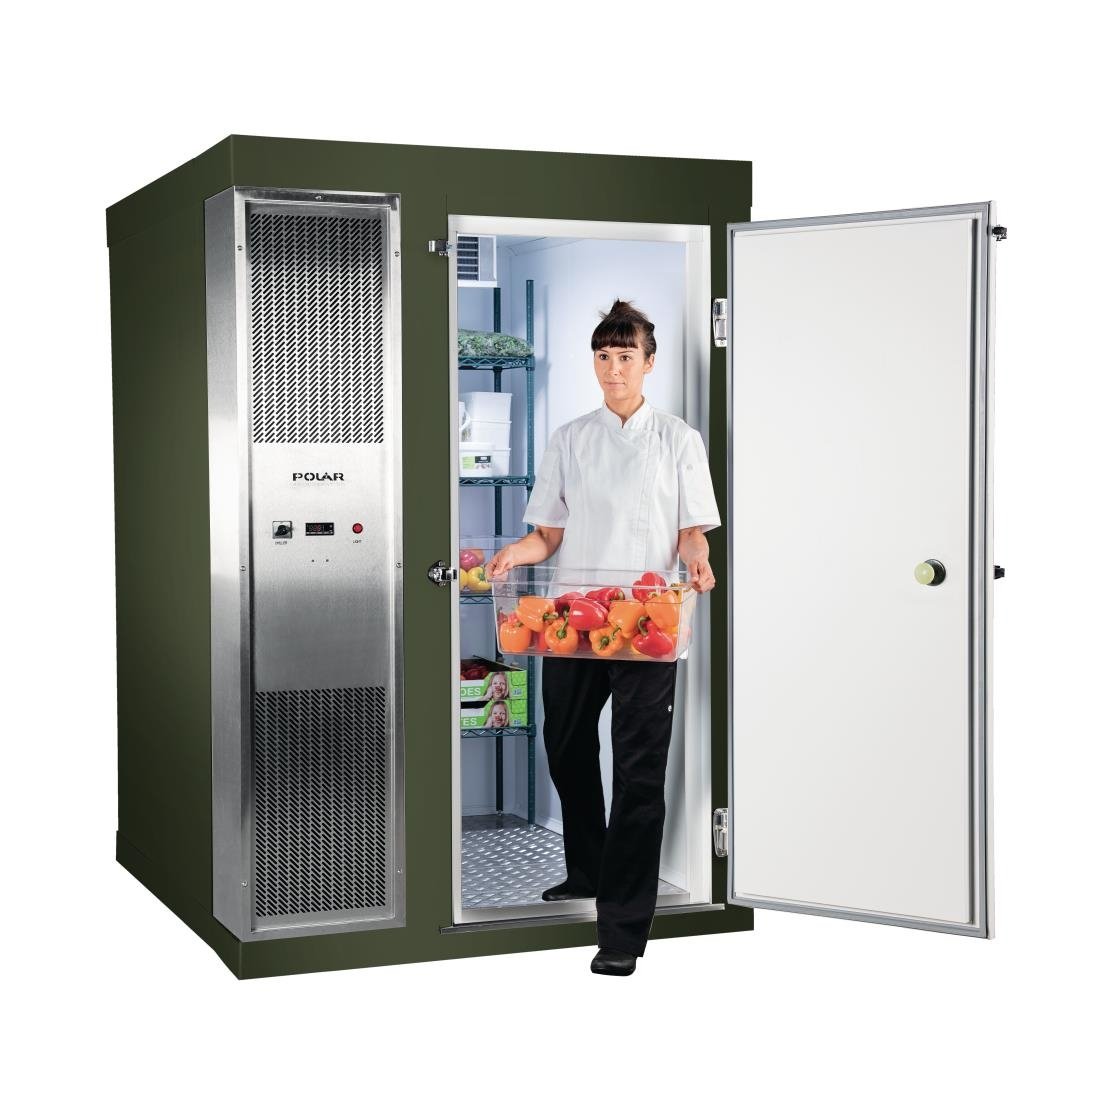 DS483-FGN Polar U-Series 1.5 x 2.1m Integral Walk In Freezer Room Green JD Catering Equipment Solutions Ltd